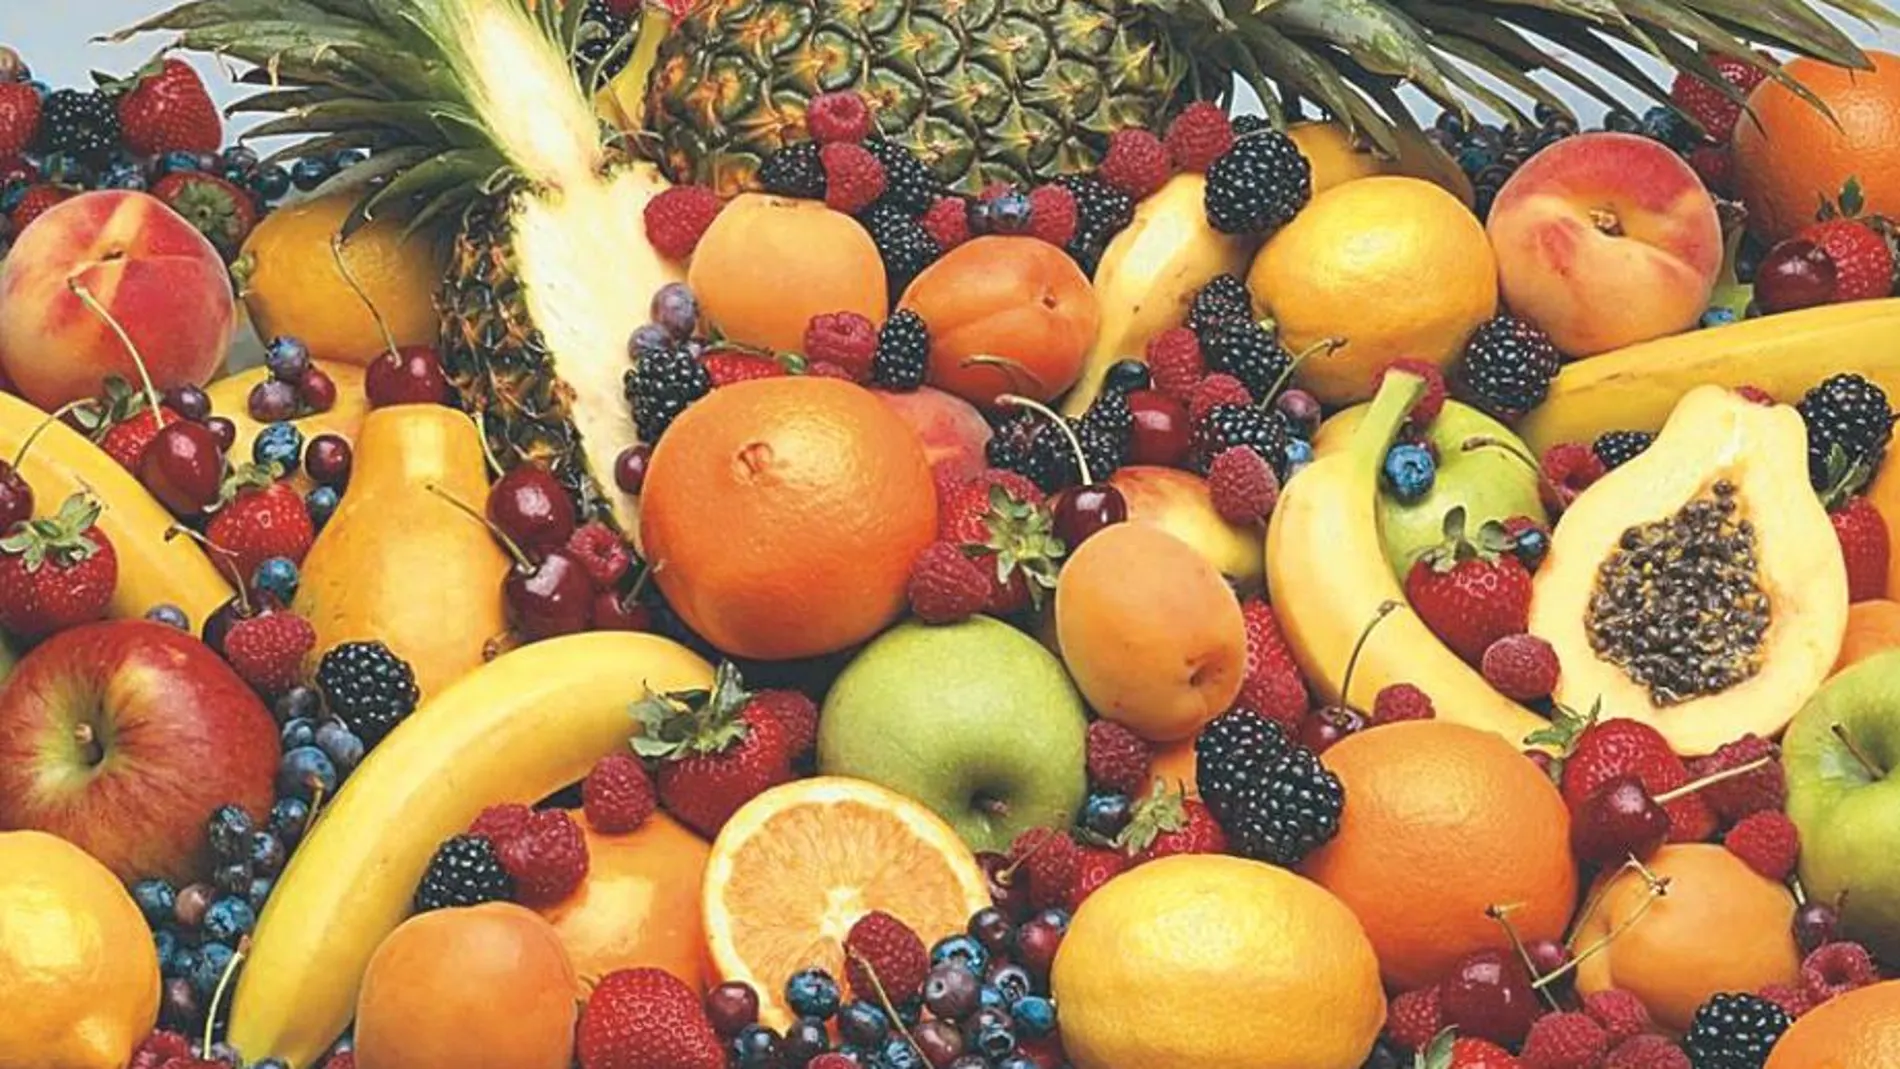 La piña en rica en vitamina C , al igual que otras frutas como los cítricos o el kiwi